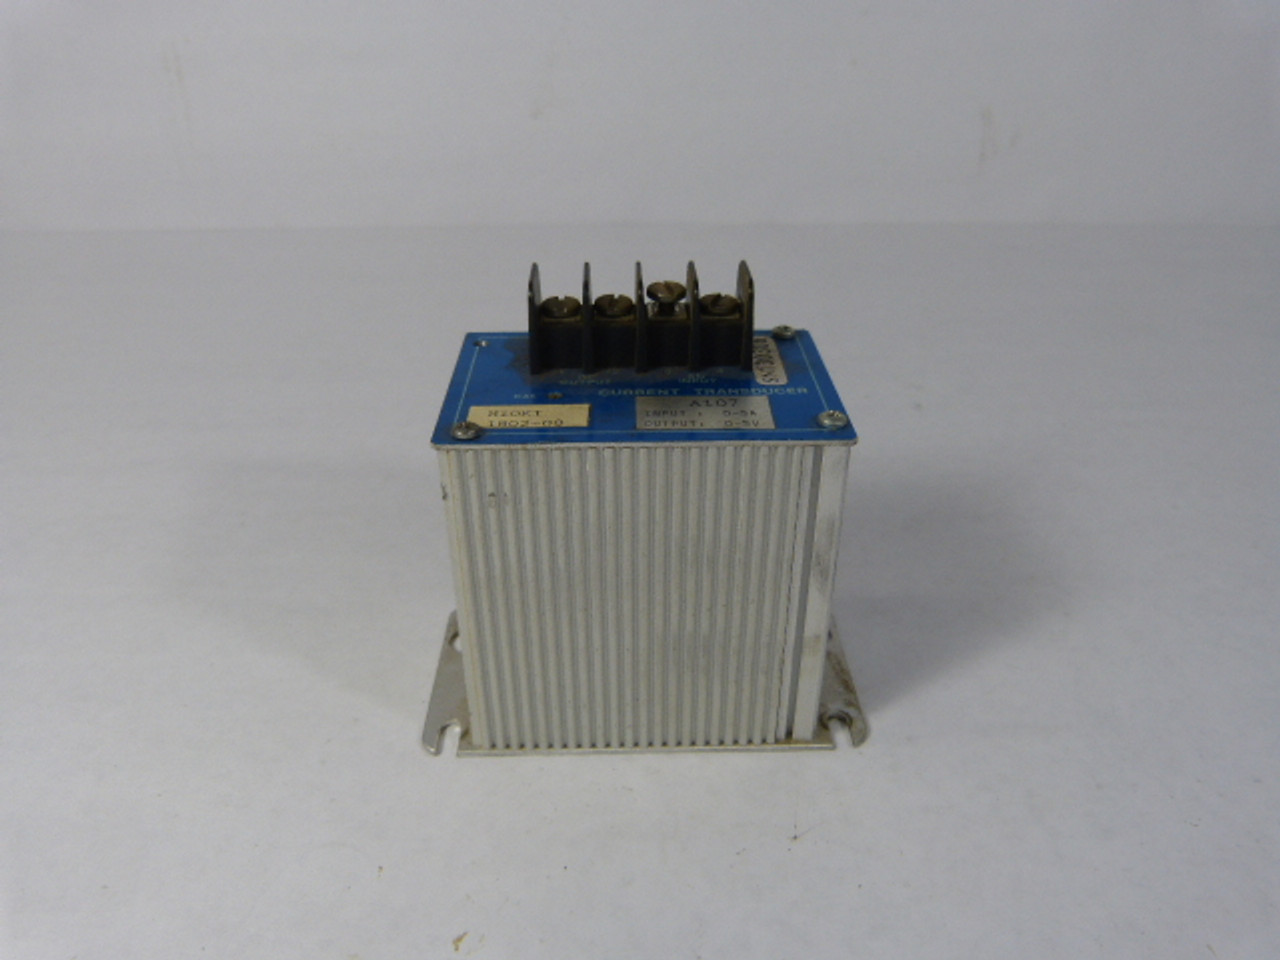 Ametek A107/1802-08 Current Transducer 0-5A Input 0-5V Output USED